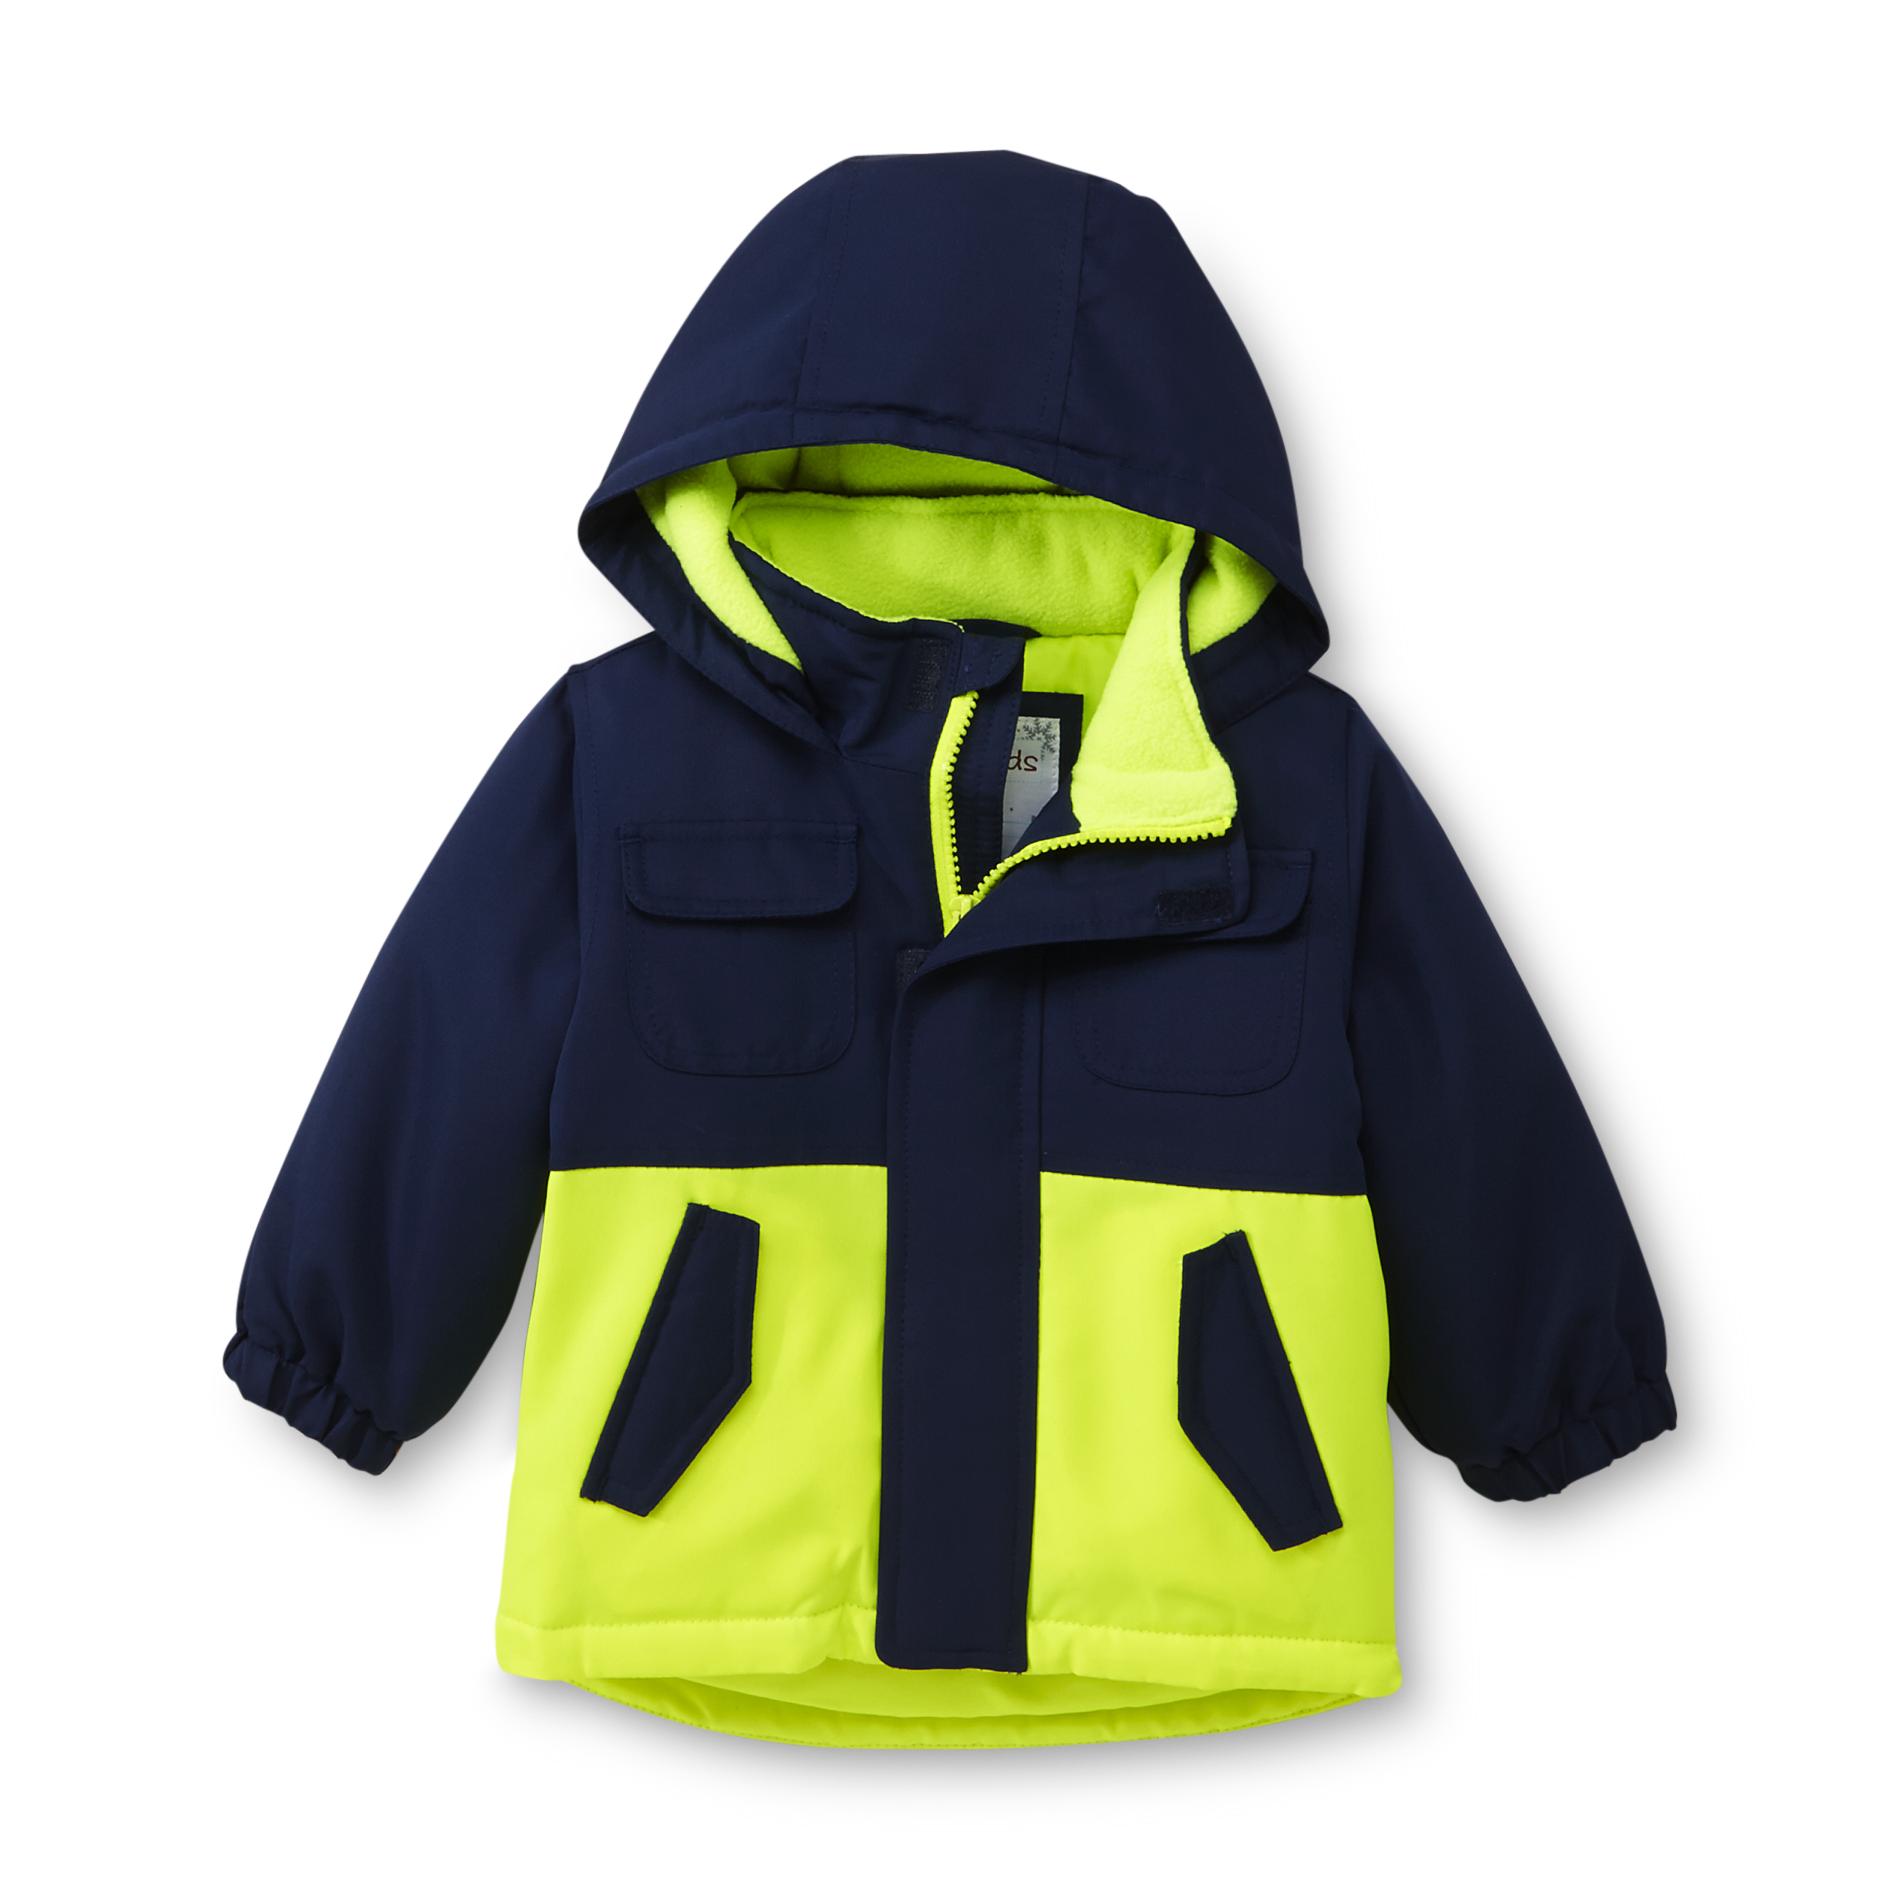 WonderKids Infant & Toddler Boy's Snowboarder Jacket